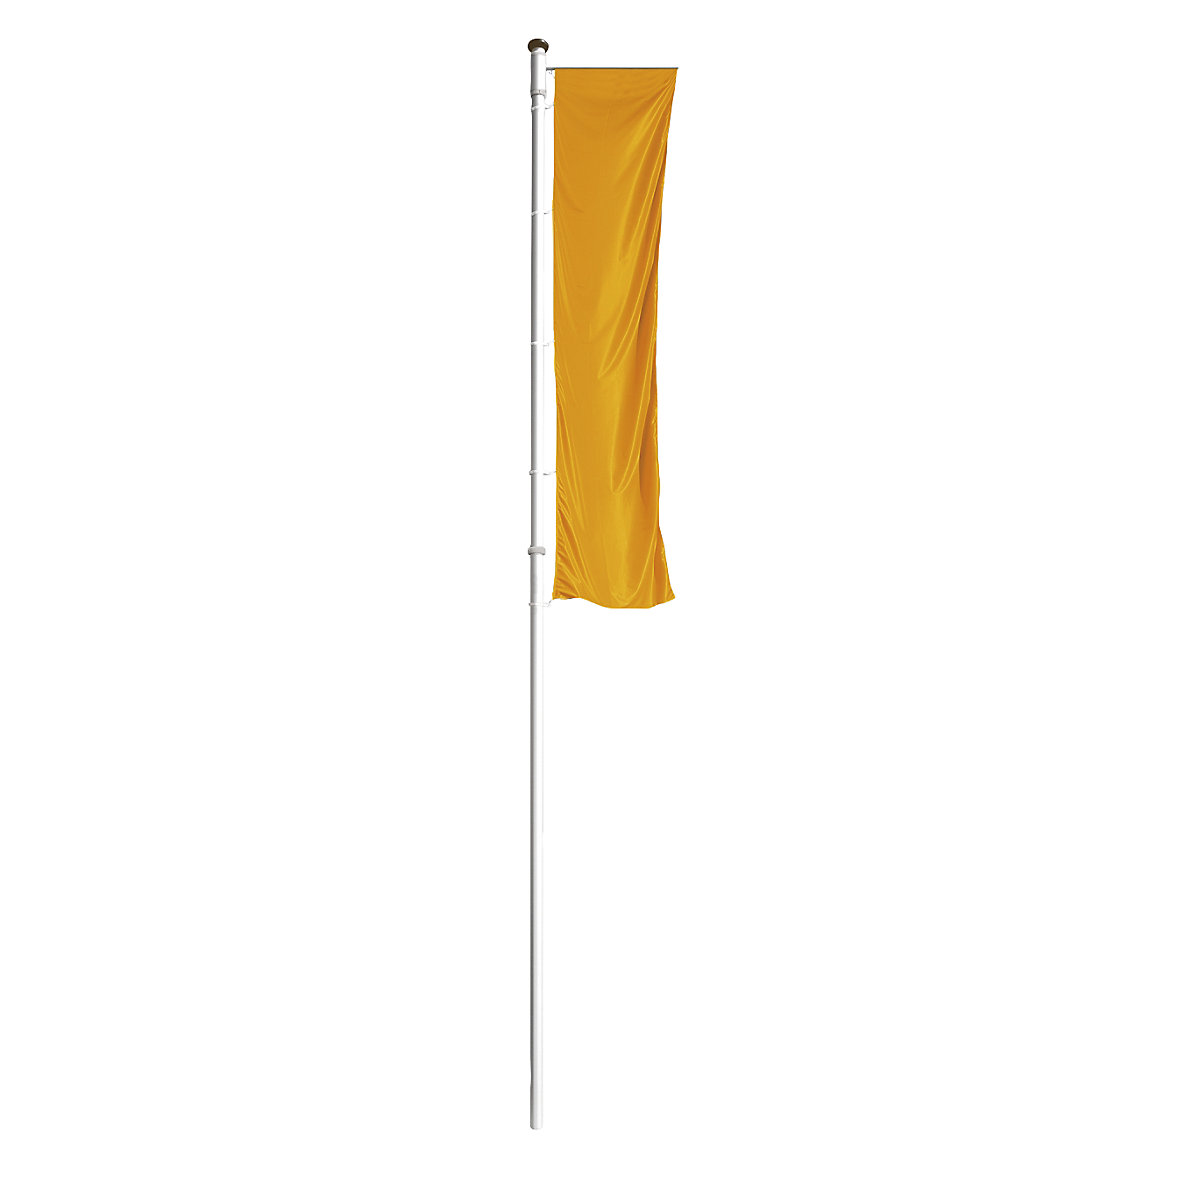 Mannus – PRESTIGE aluminium flag pole